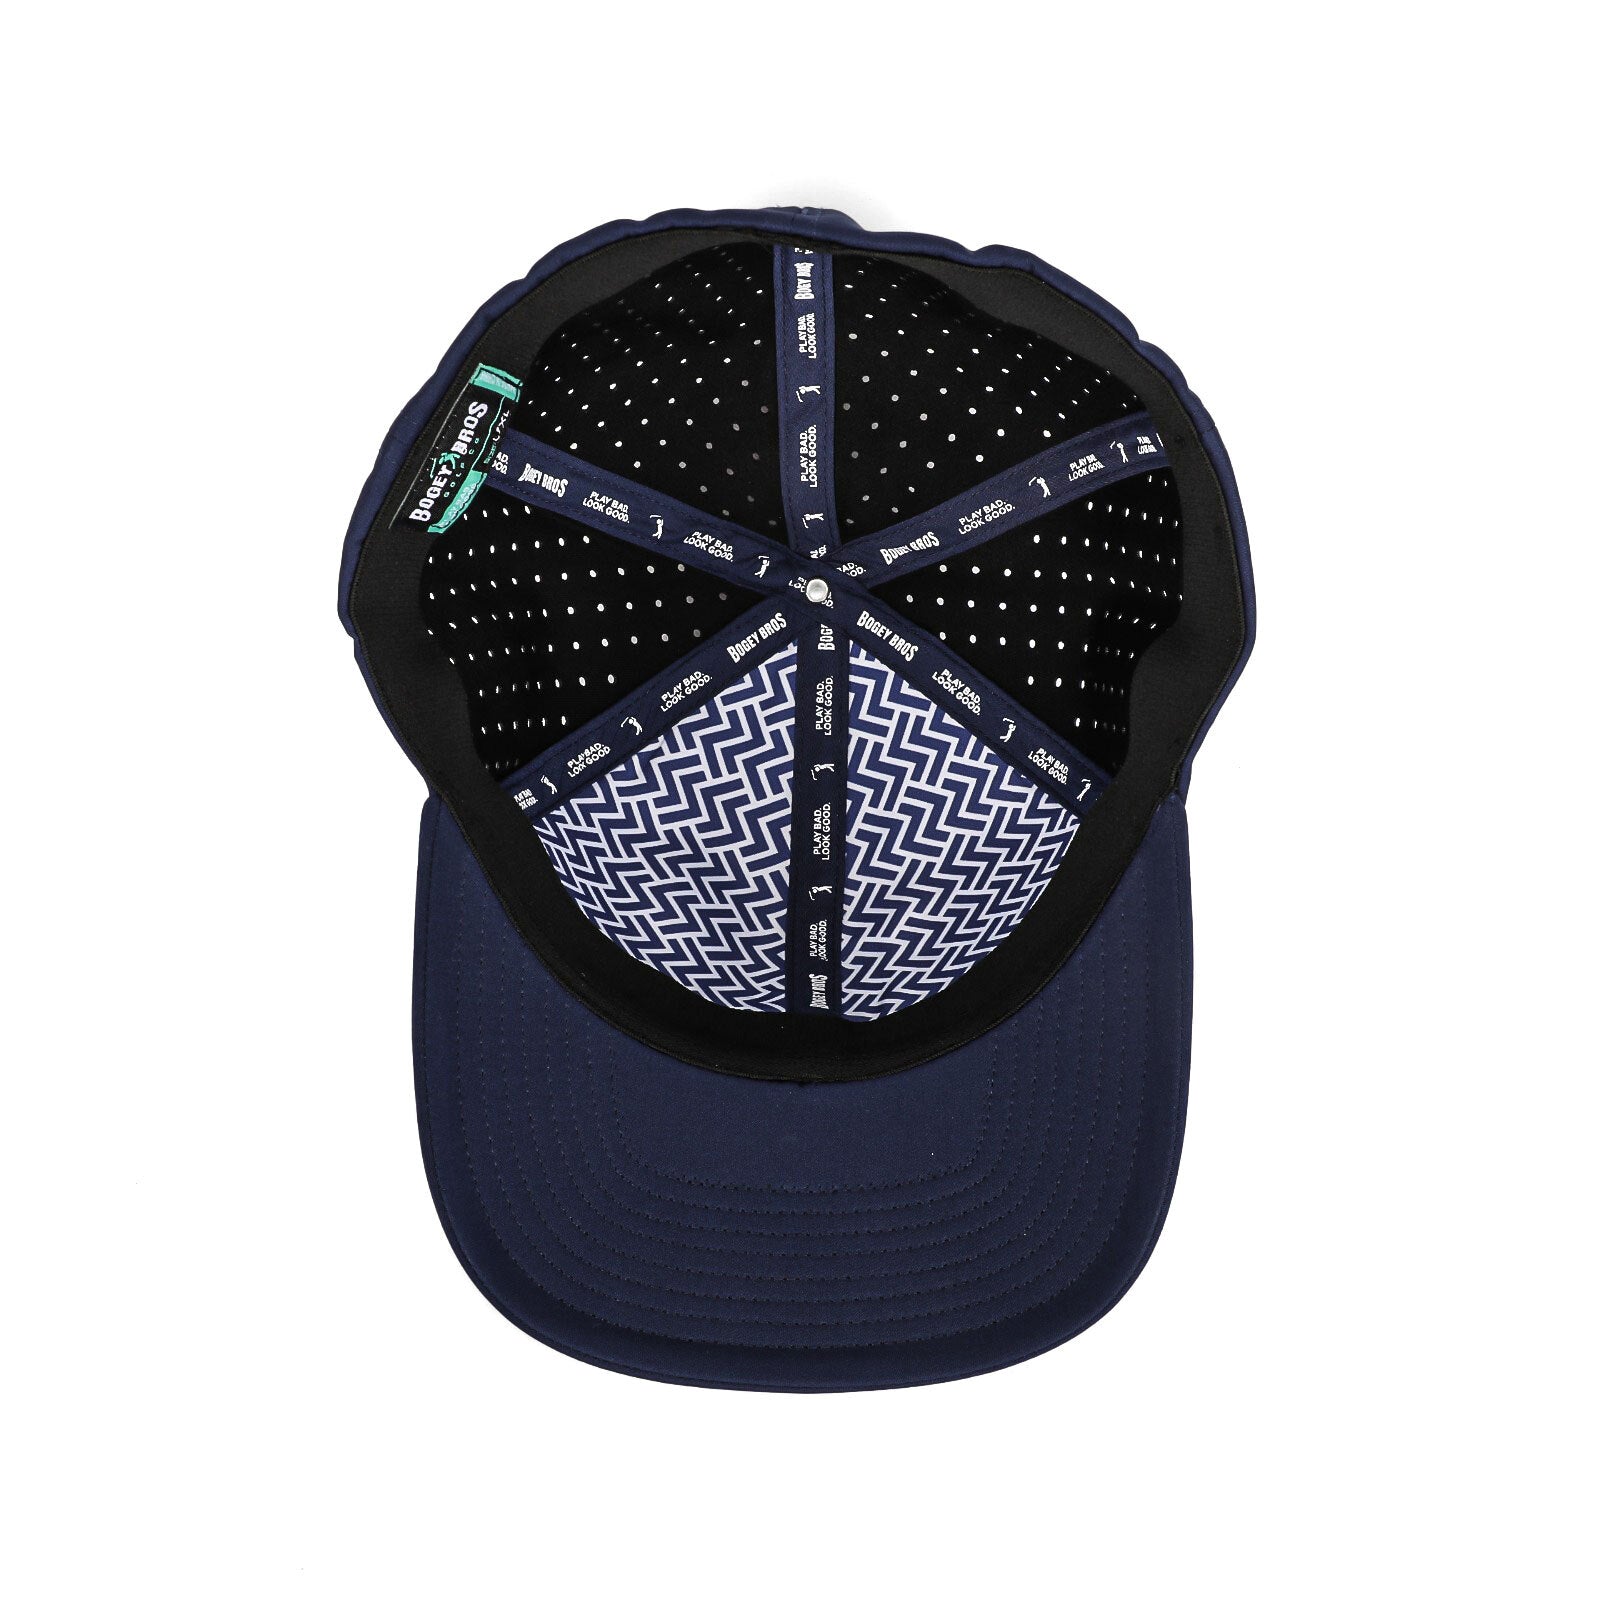 Bogeyman Navy - Performance Golf Hat - Stretch Fit